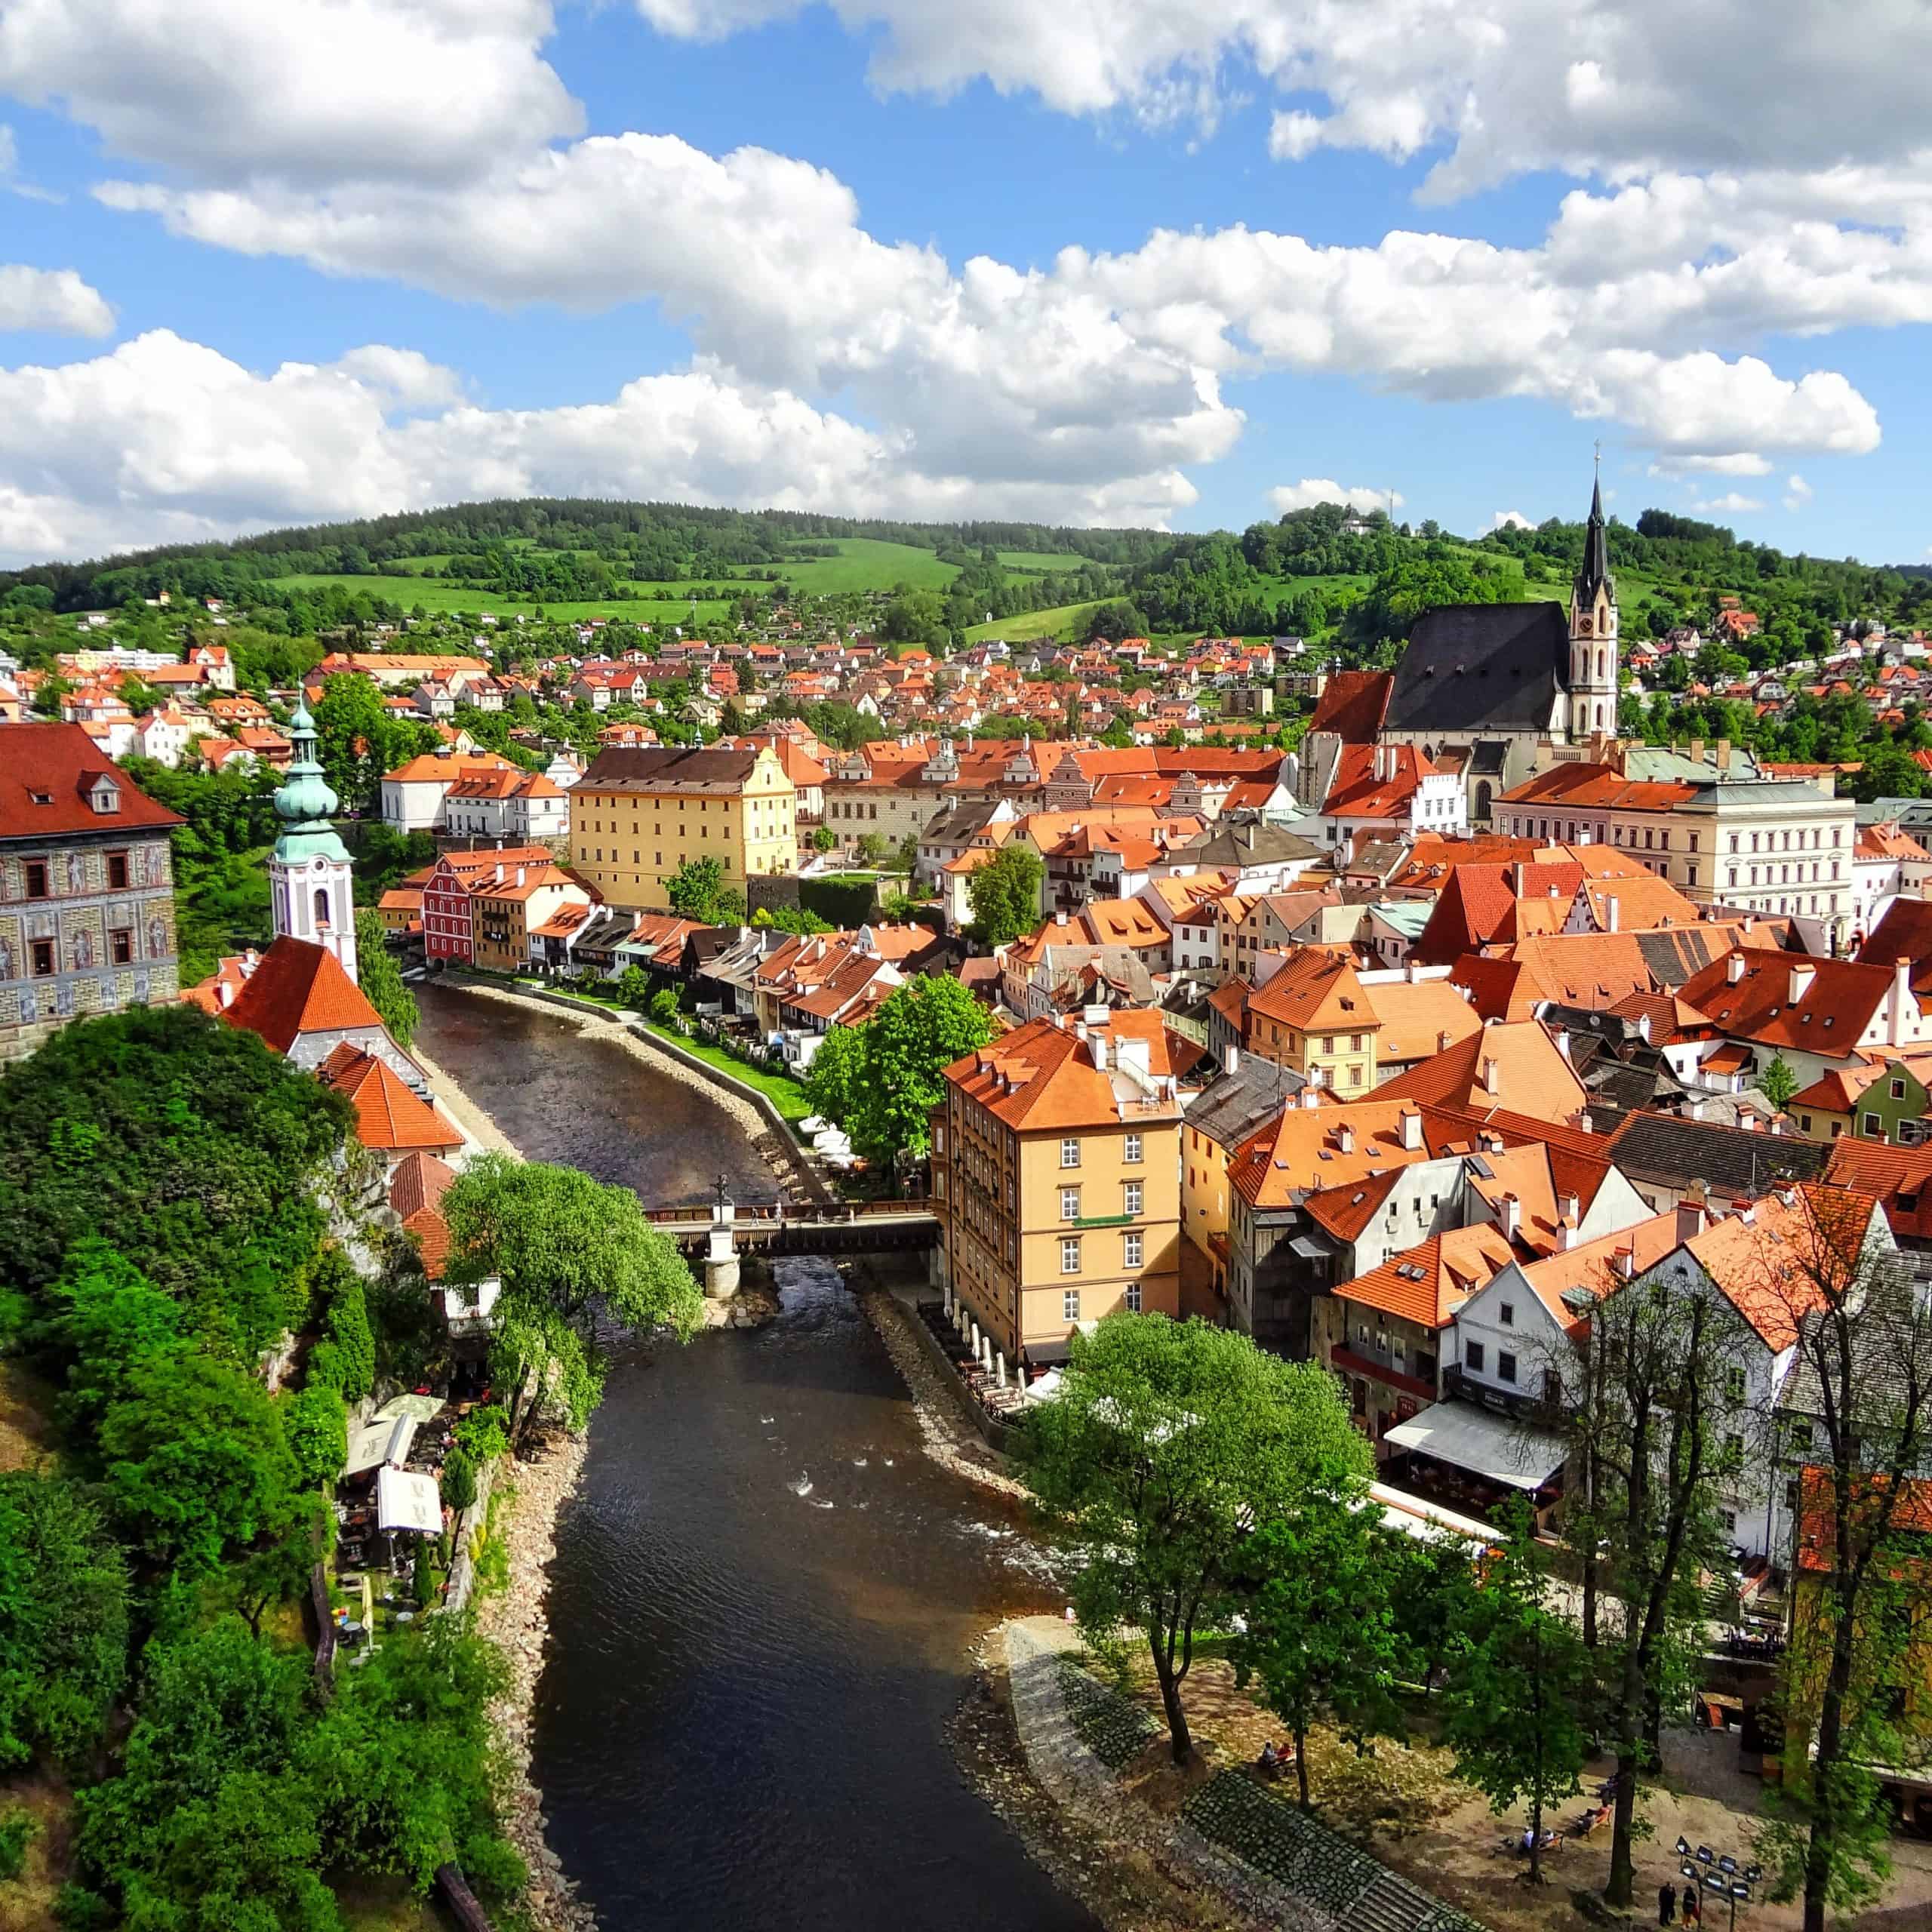 Nejkrásnější místa pro dovolenou v Česku